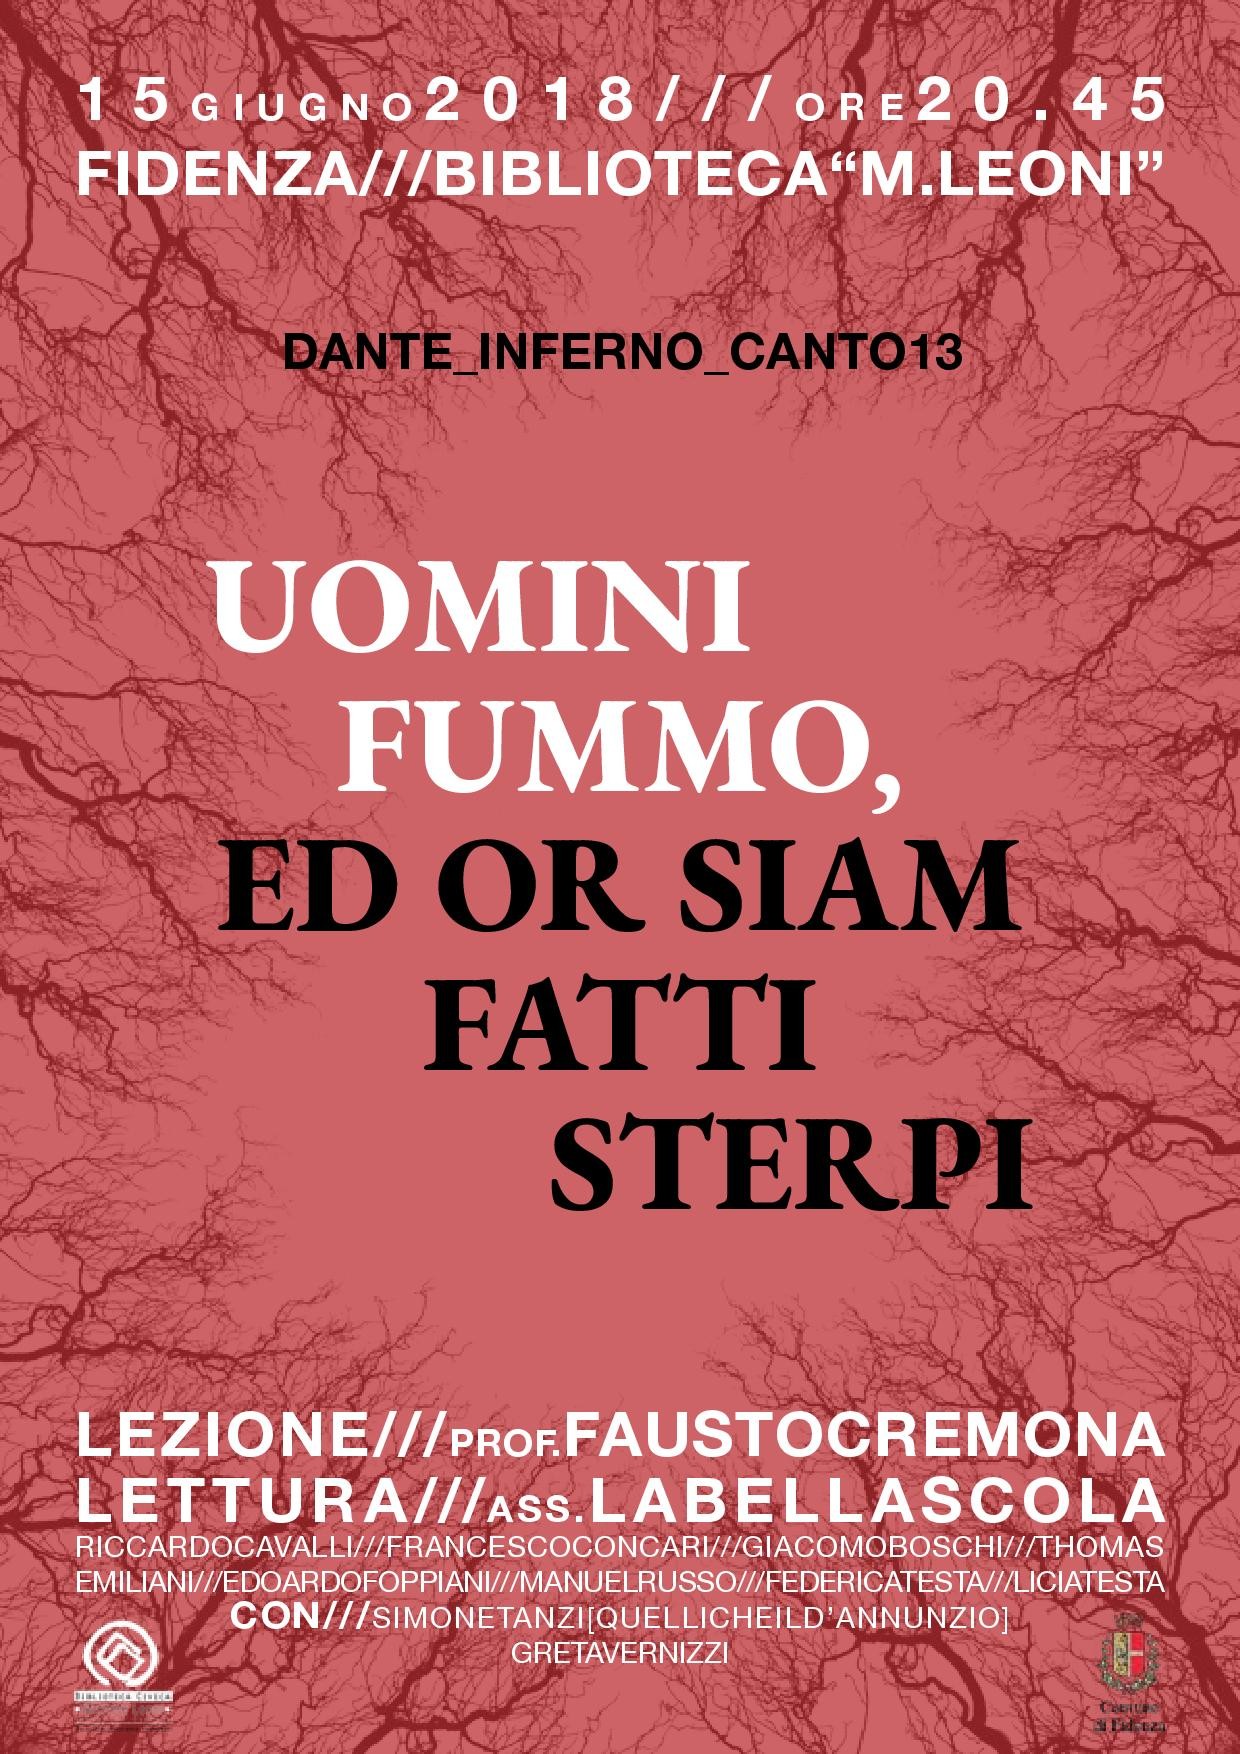 Lectura Dantis sul canto XIII dell'Inferno, tenuta dal prof. Fausto Cremona